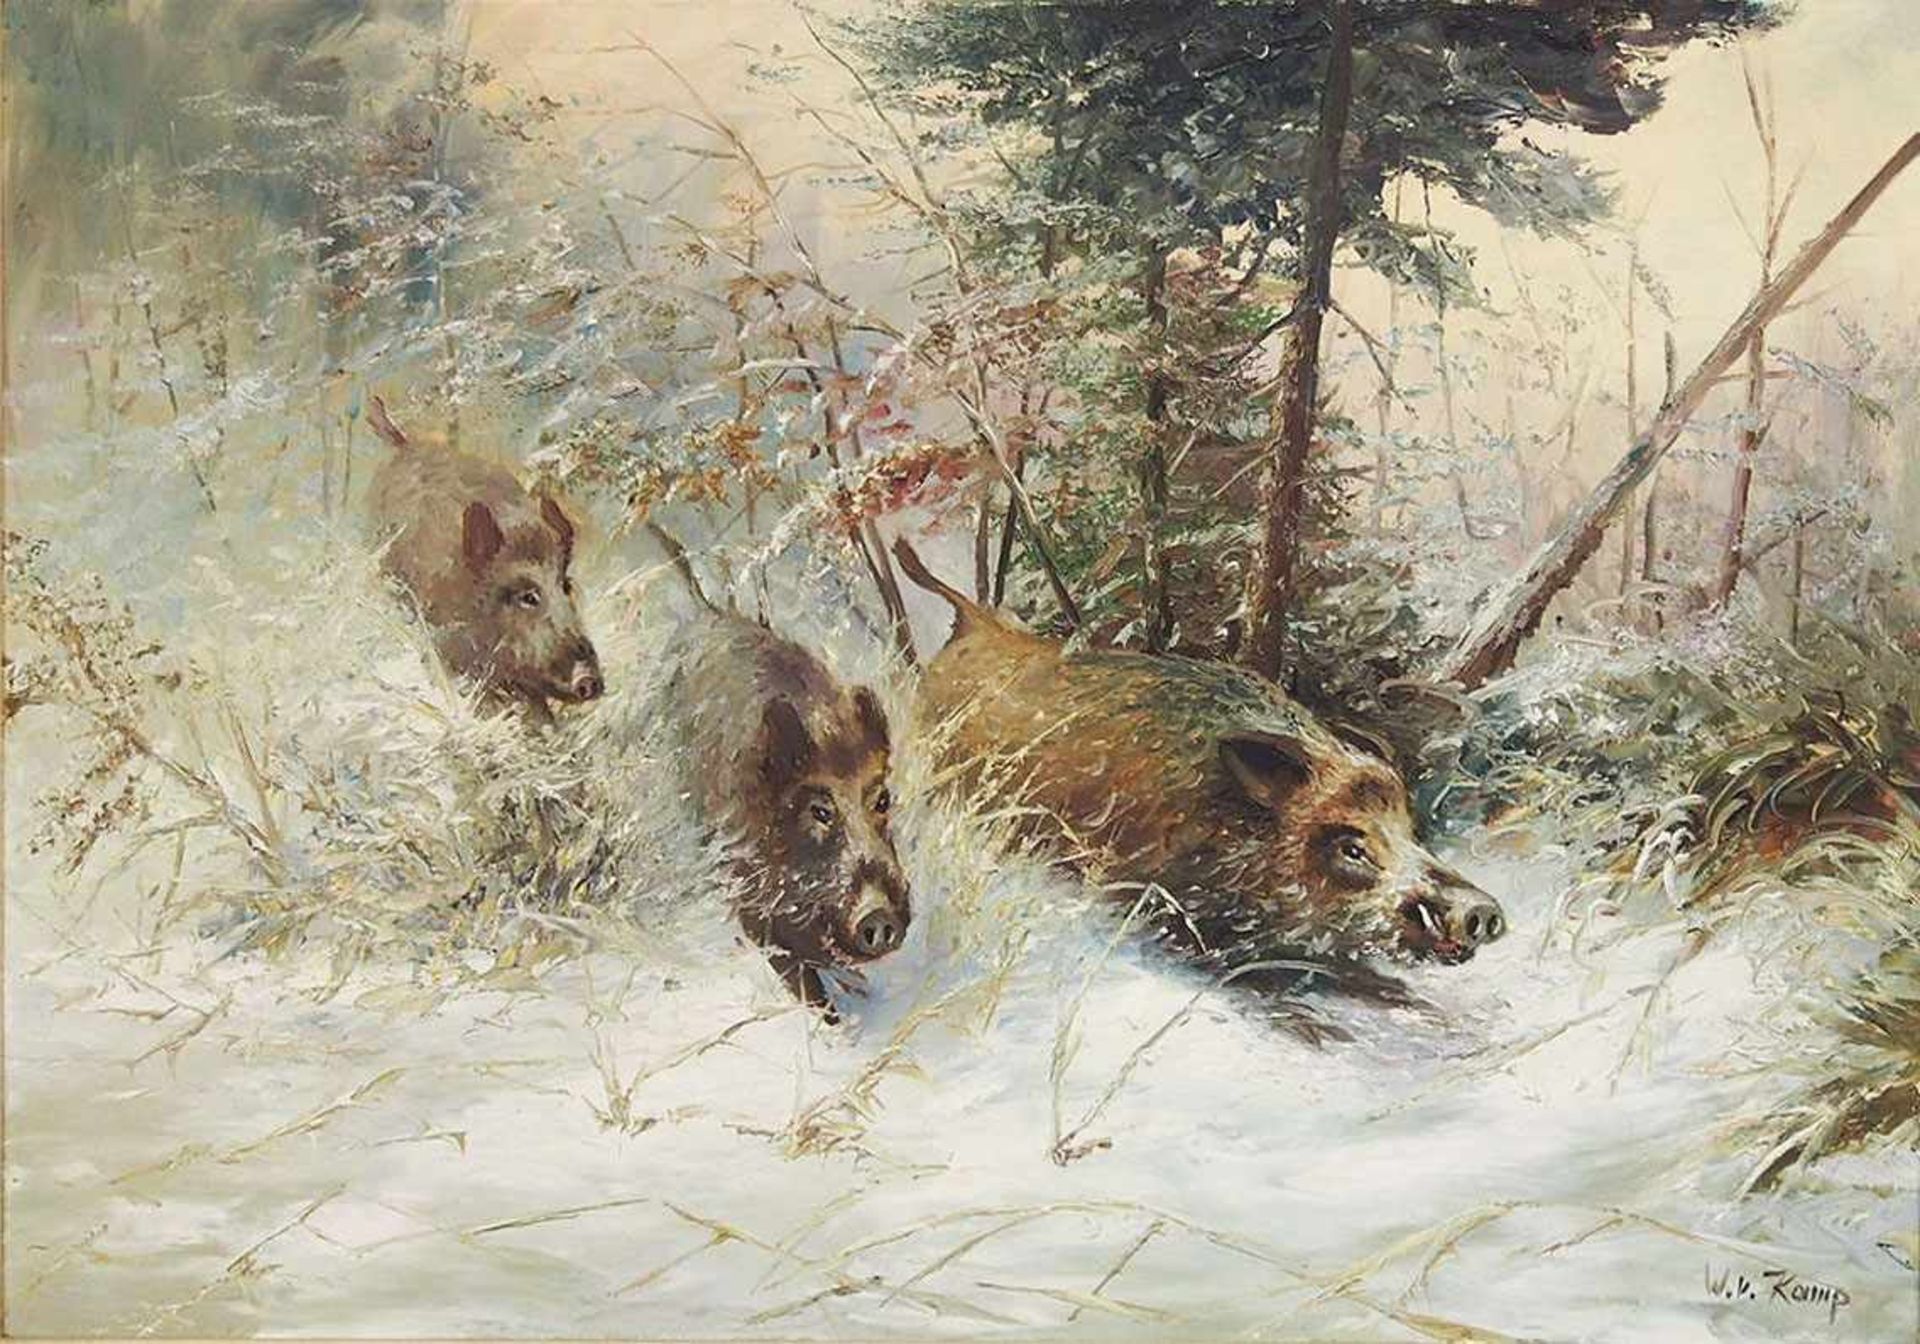 KAMP, Willi vontätig 20. Jh.Wildschweine im WinterwaldÖl auf Leinwand, signiert unten rechts, 70 x